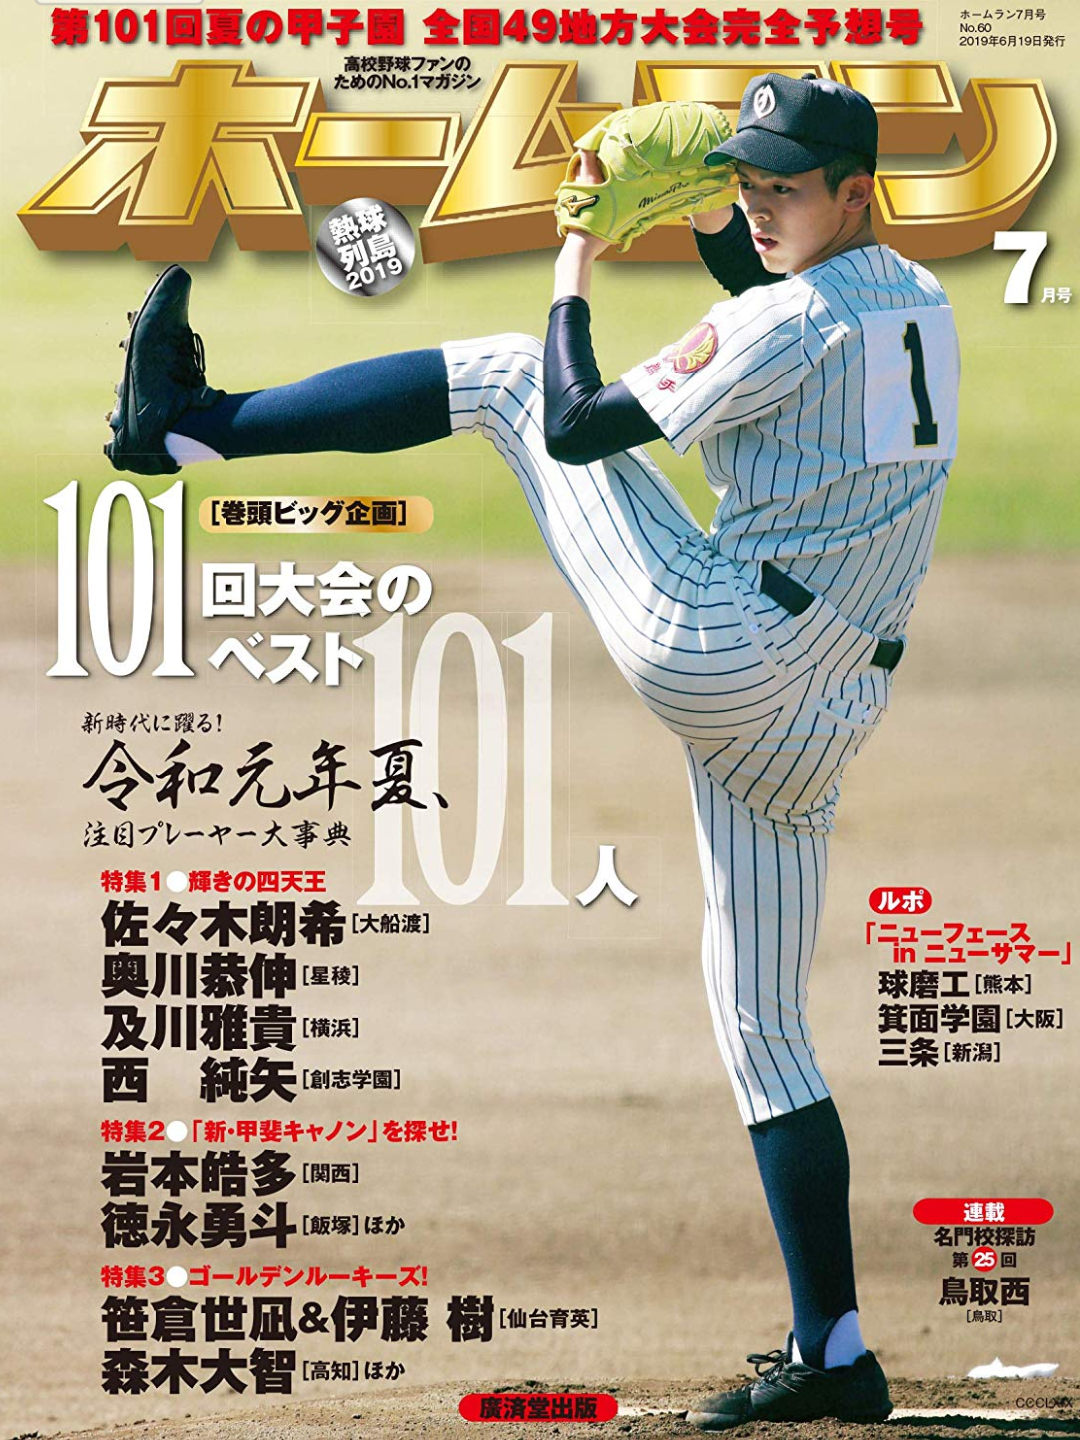 蓬萊高校野球部 日本媒體發行第101回選手權地方大會之觀戰指南